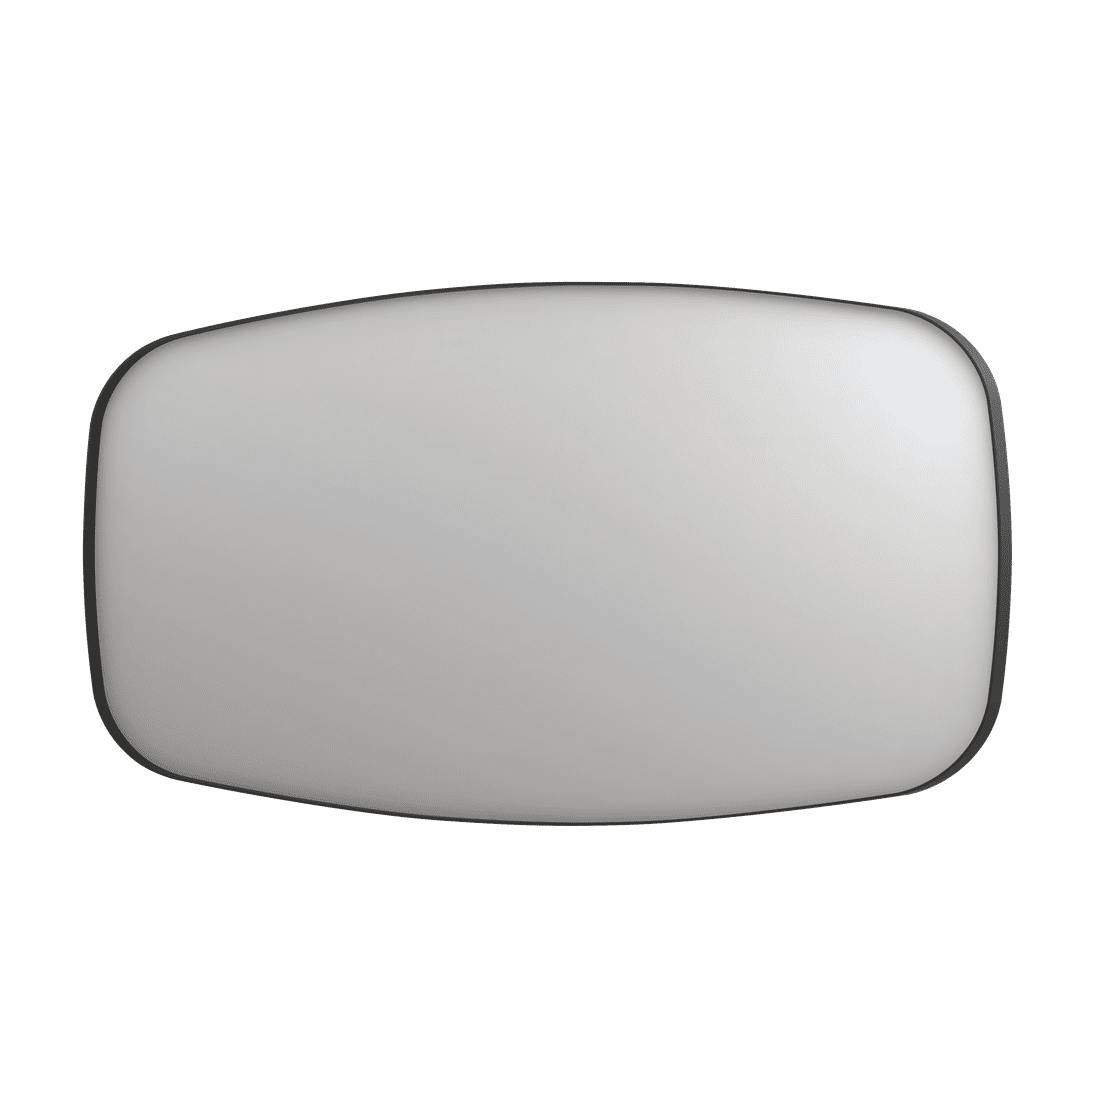 Billede af SP29 superellipse spejl i ramme i matsort - 160x4x80